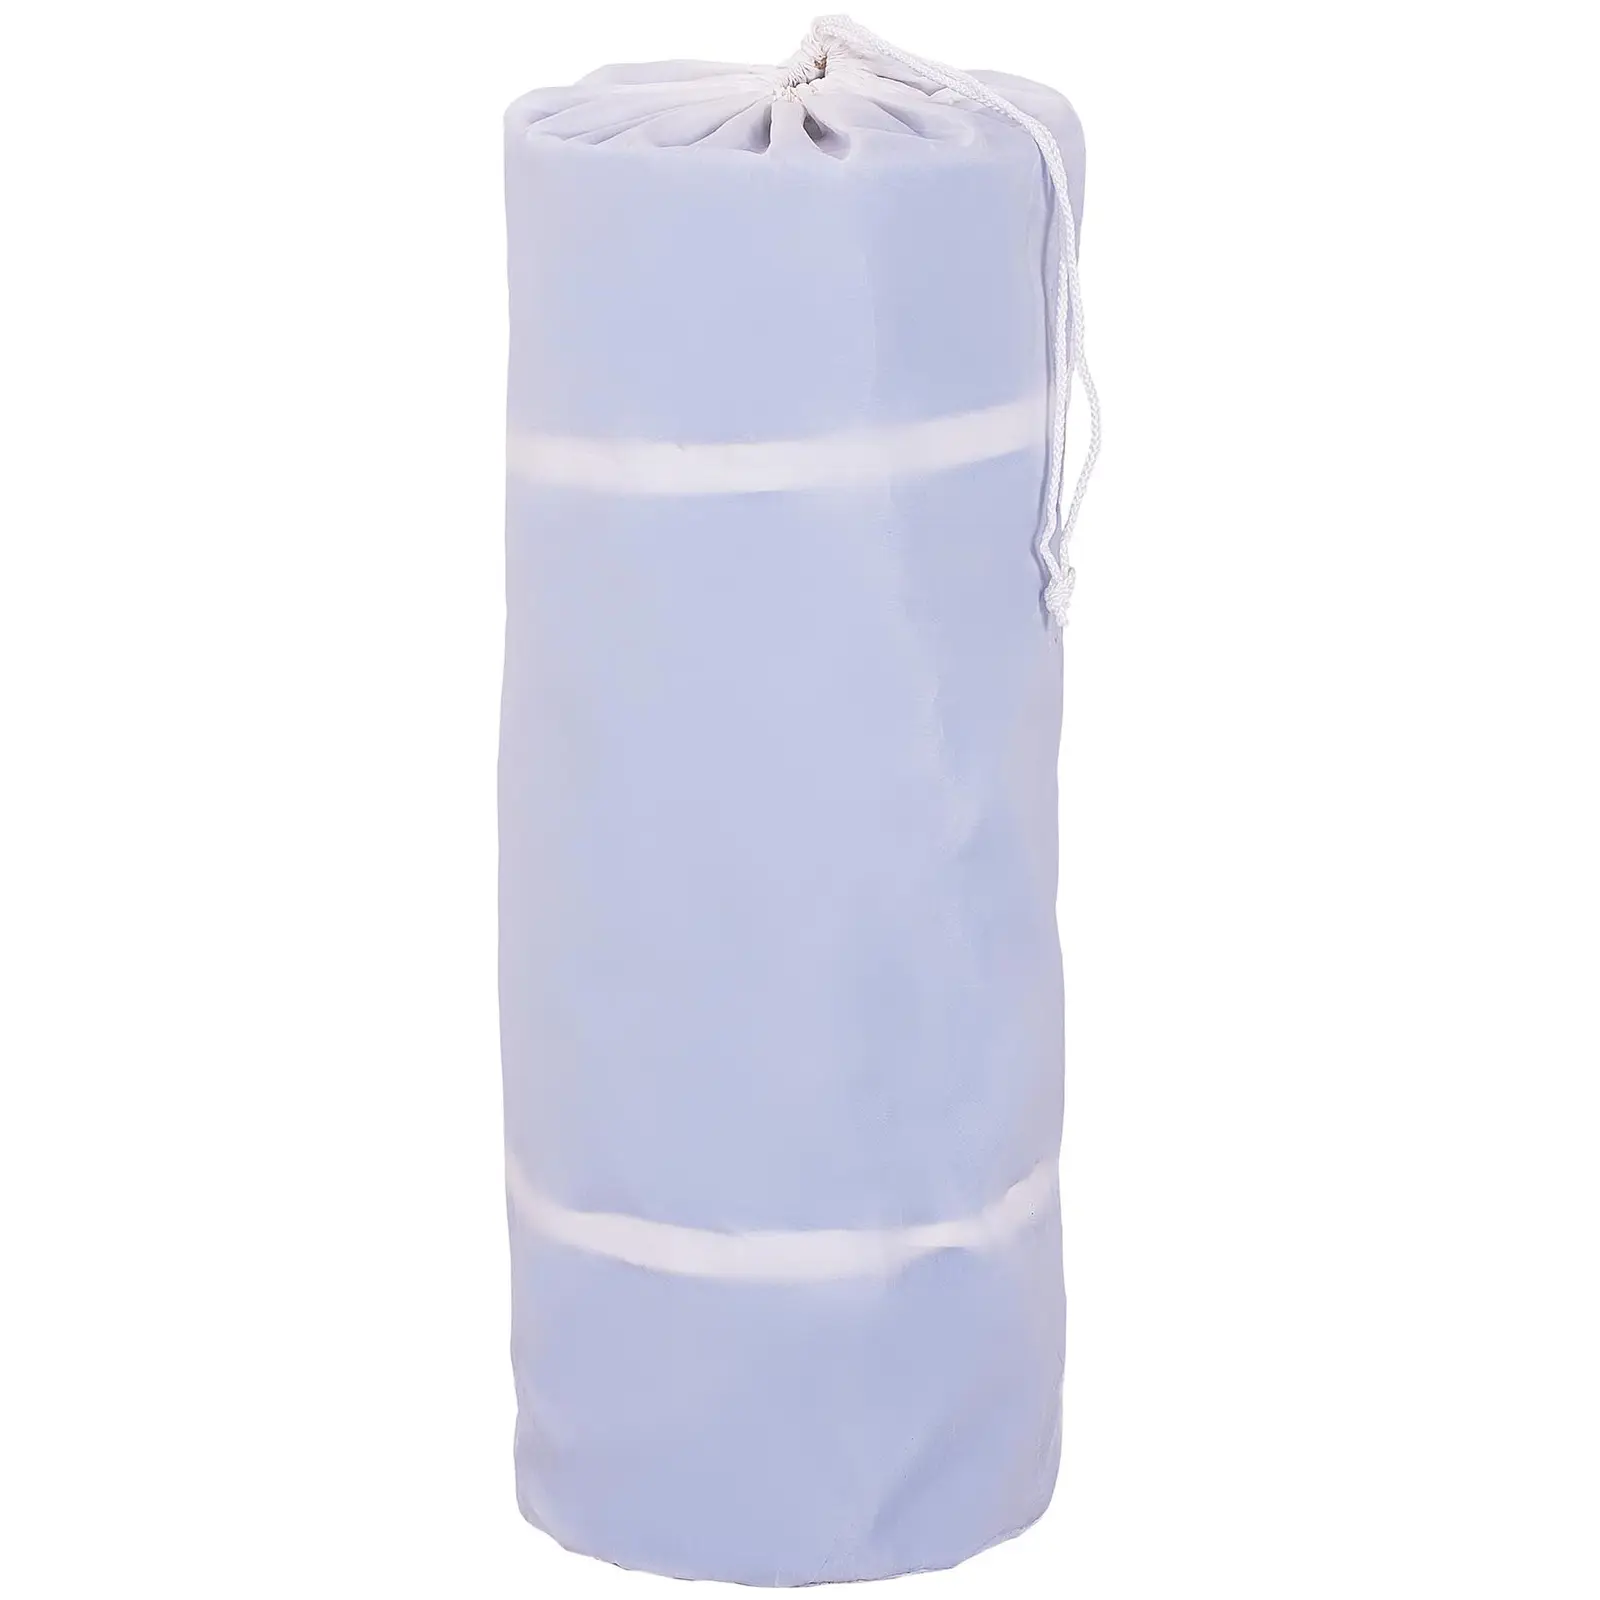 Tapete de ginástica inflável - 300 x 100 x 20 cm - azul-branco